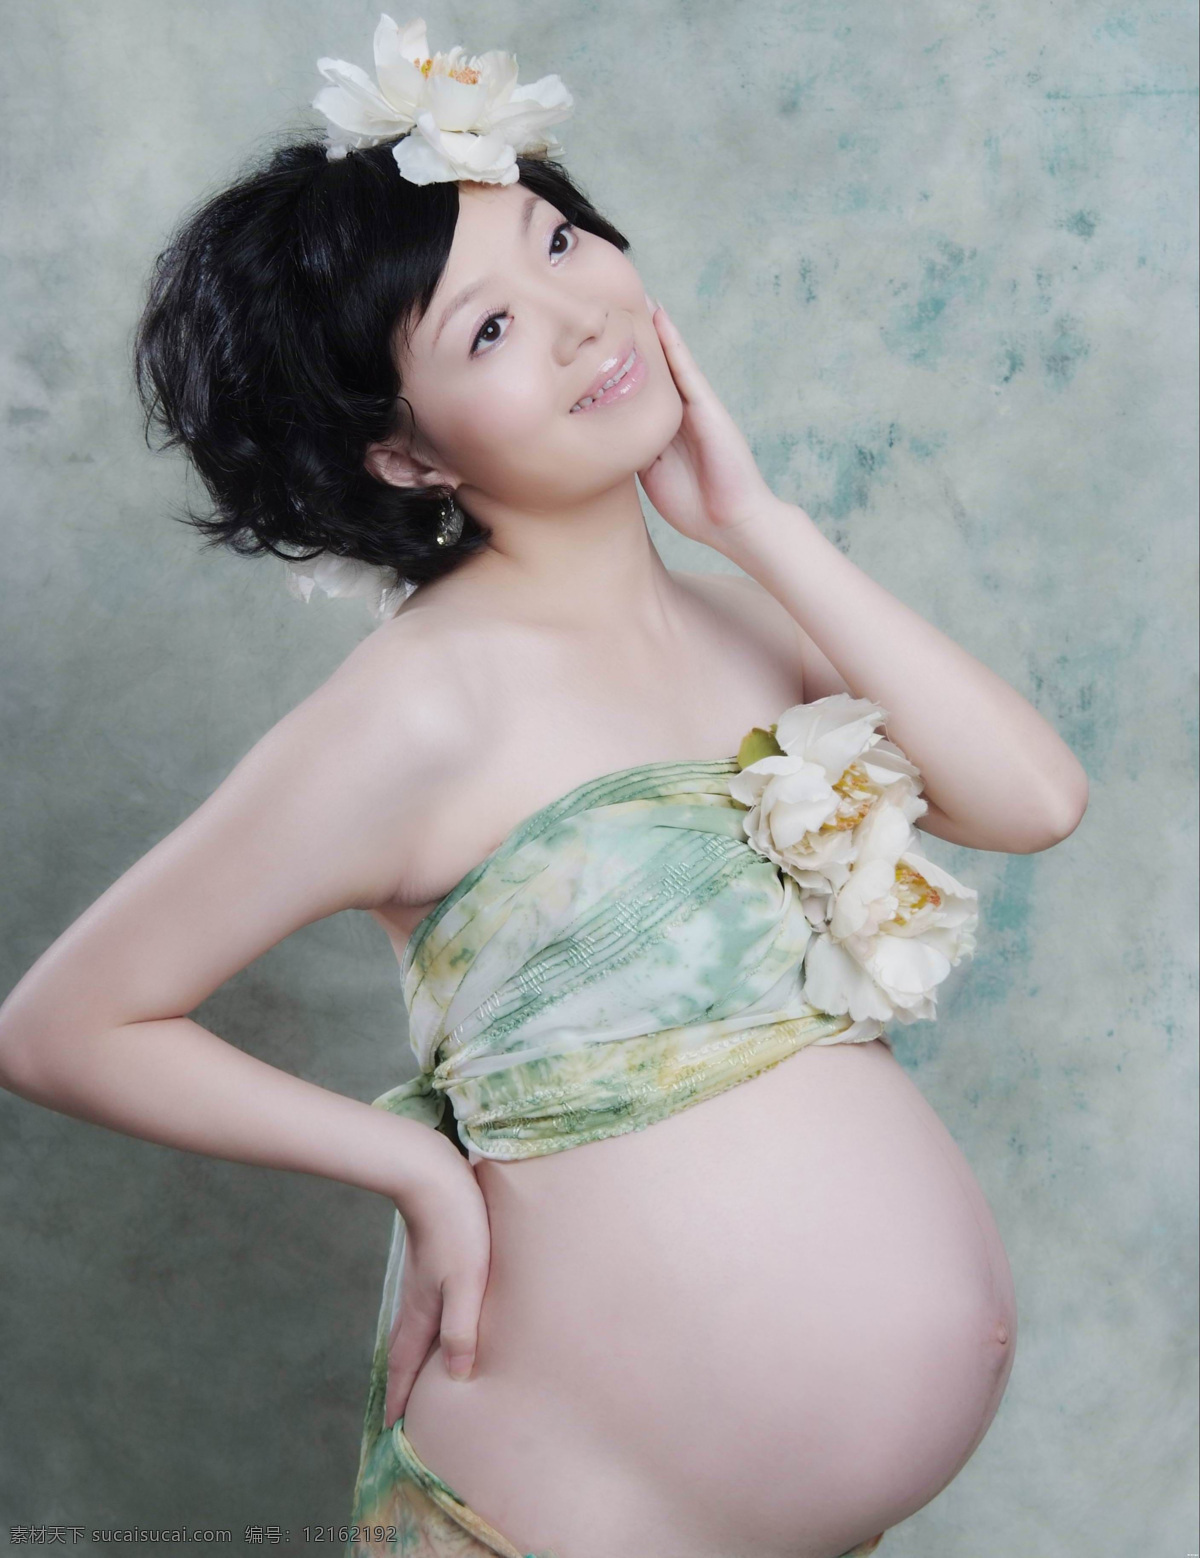 可爱孕味 怀孕 孕妇 大肚子 可爱 美丽 母亲 母爱 母性 孕味十足 美女 性感 花朵 女性女人 人物图库